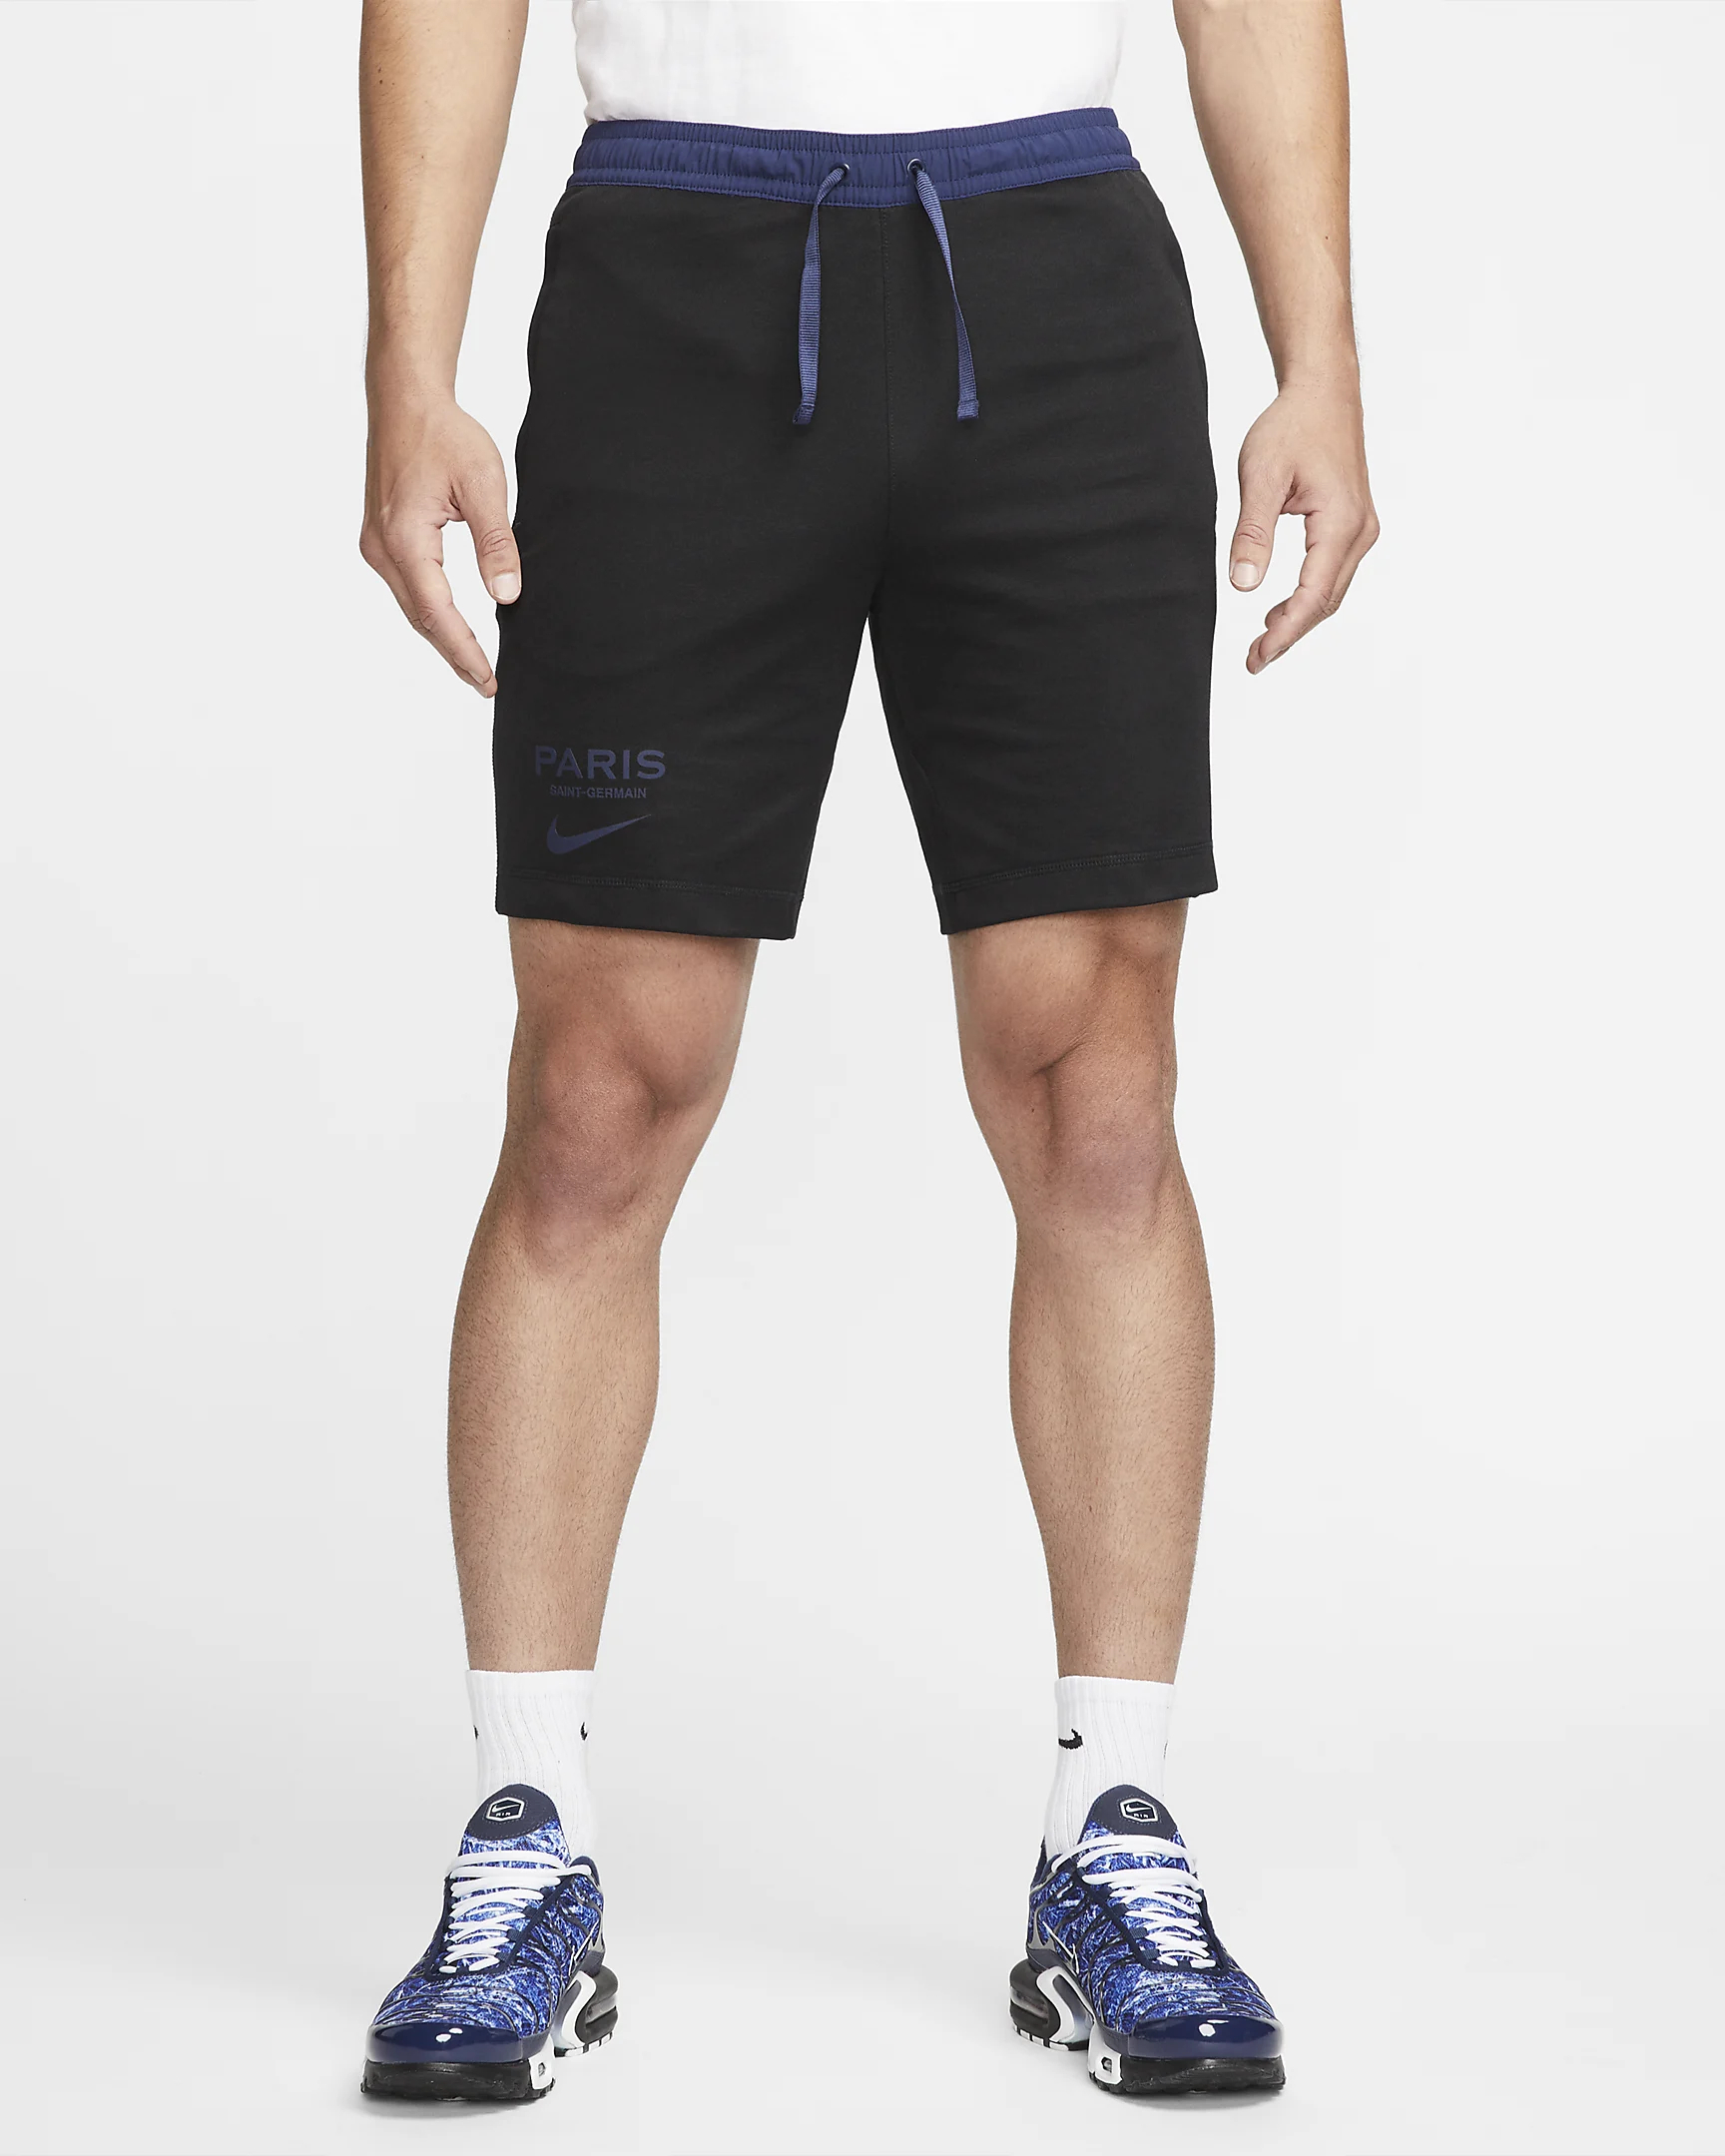 Спортивные шорты мужские Nike Travel Short Kz, DN1321-010, размер L